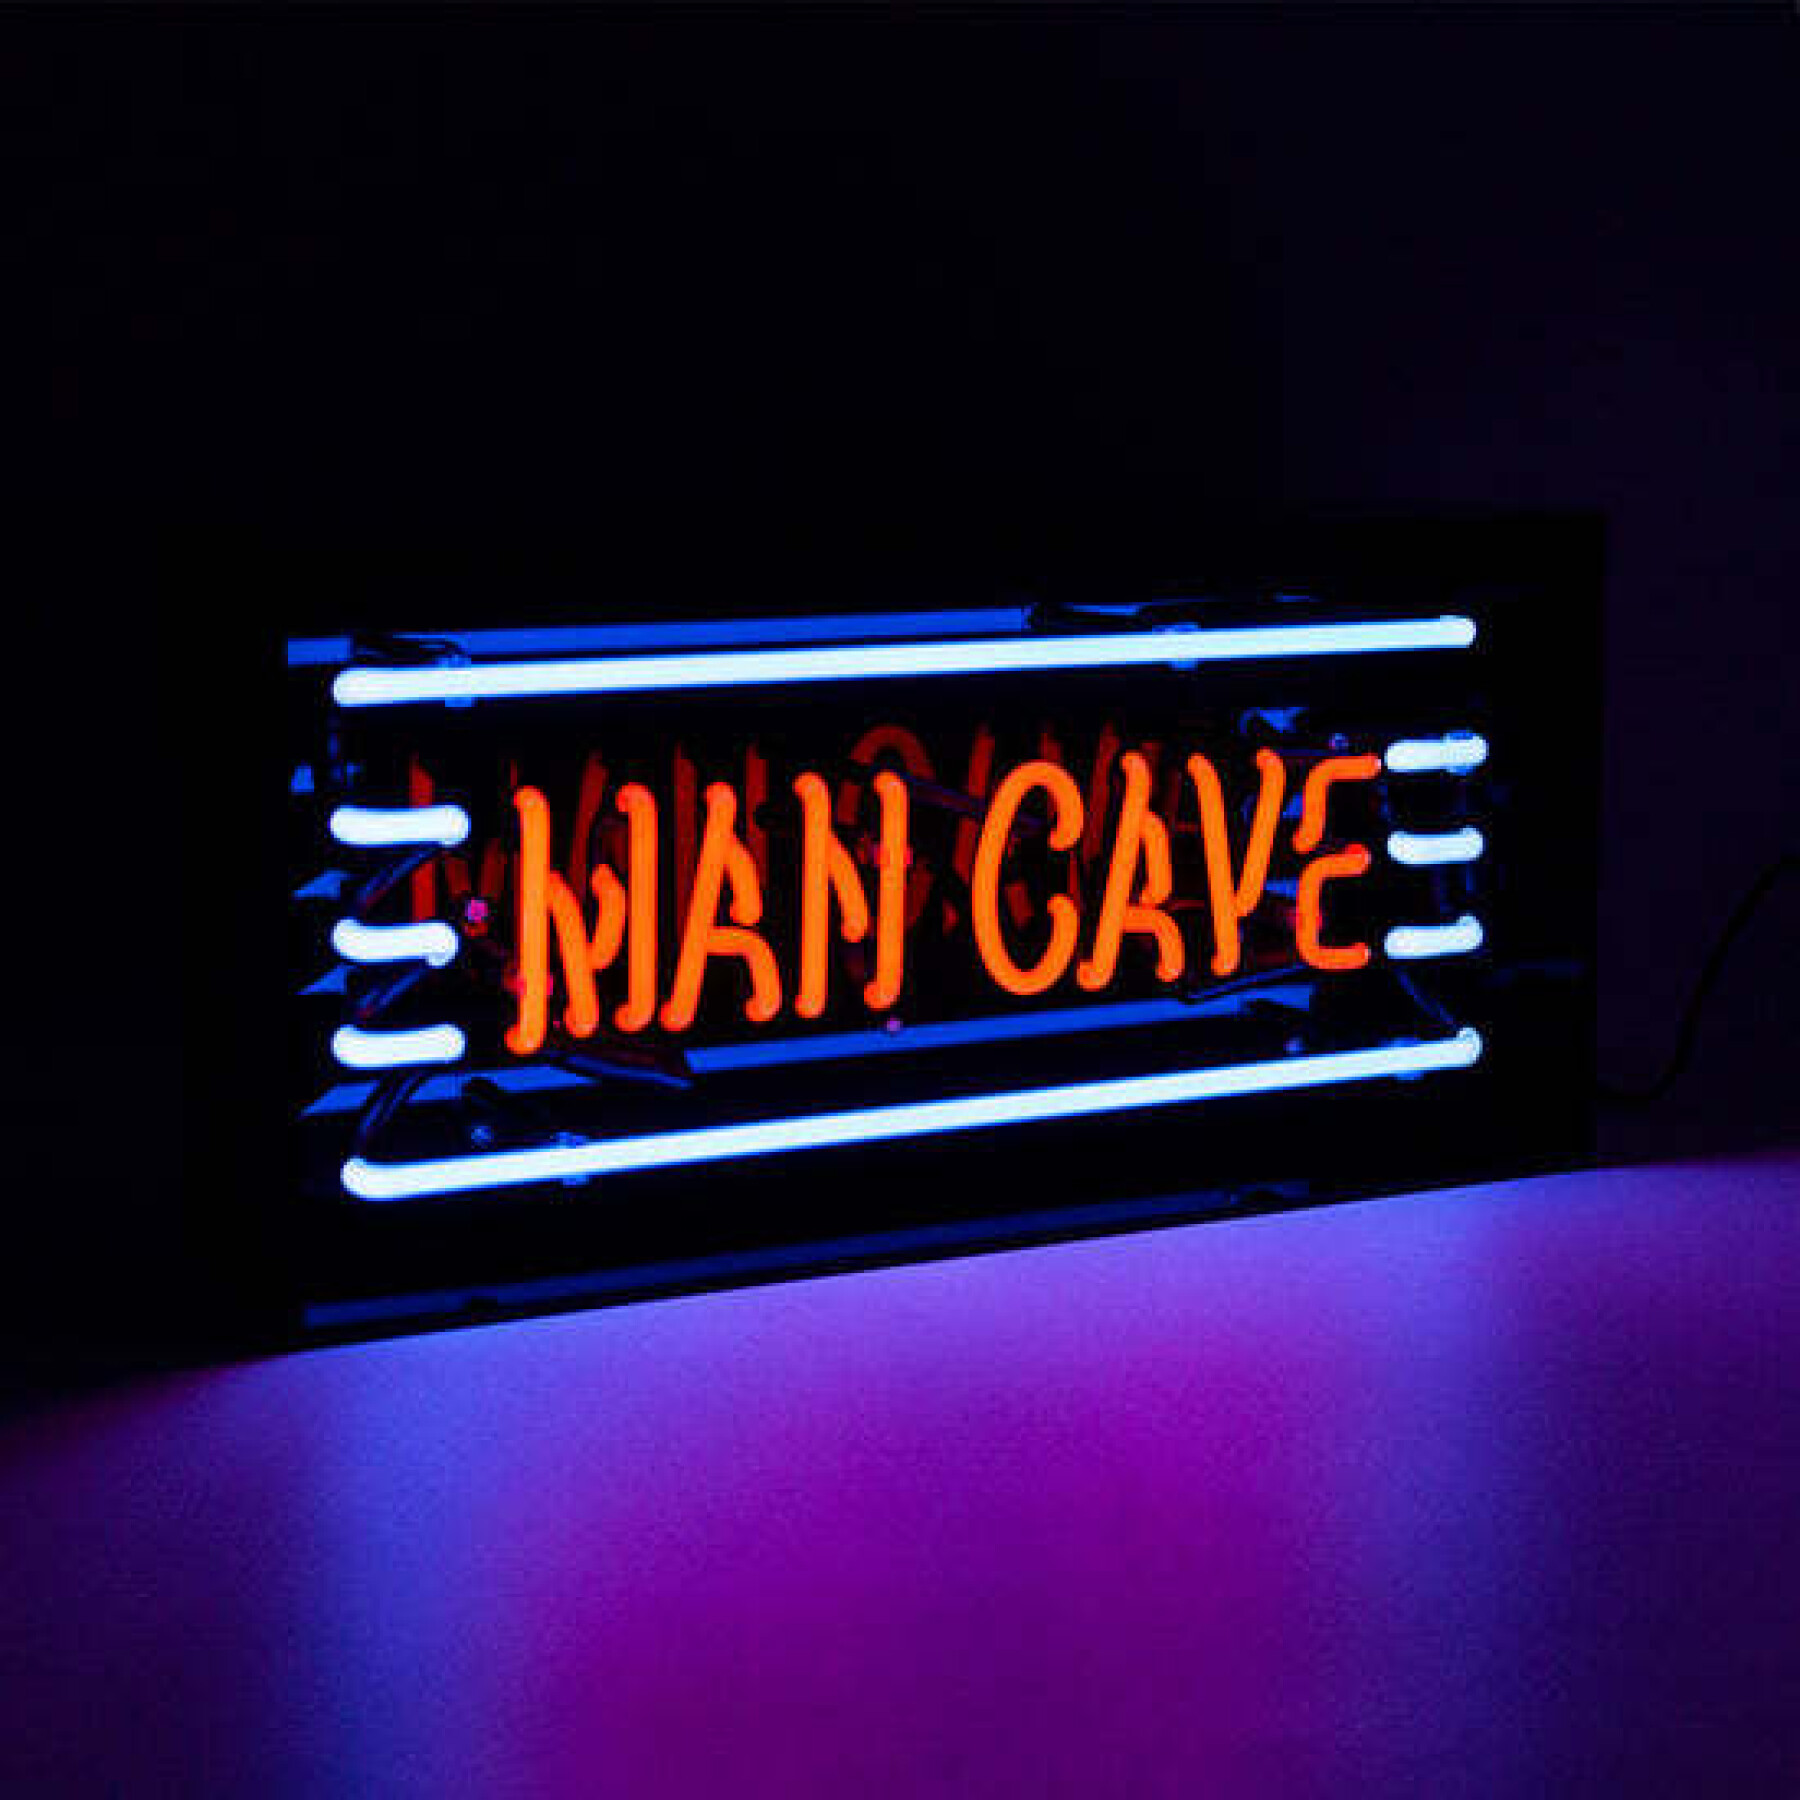 Enseigne lumineuse néon Locomocean Man Cave